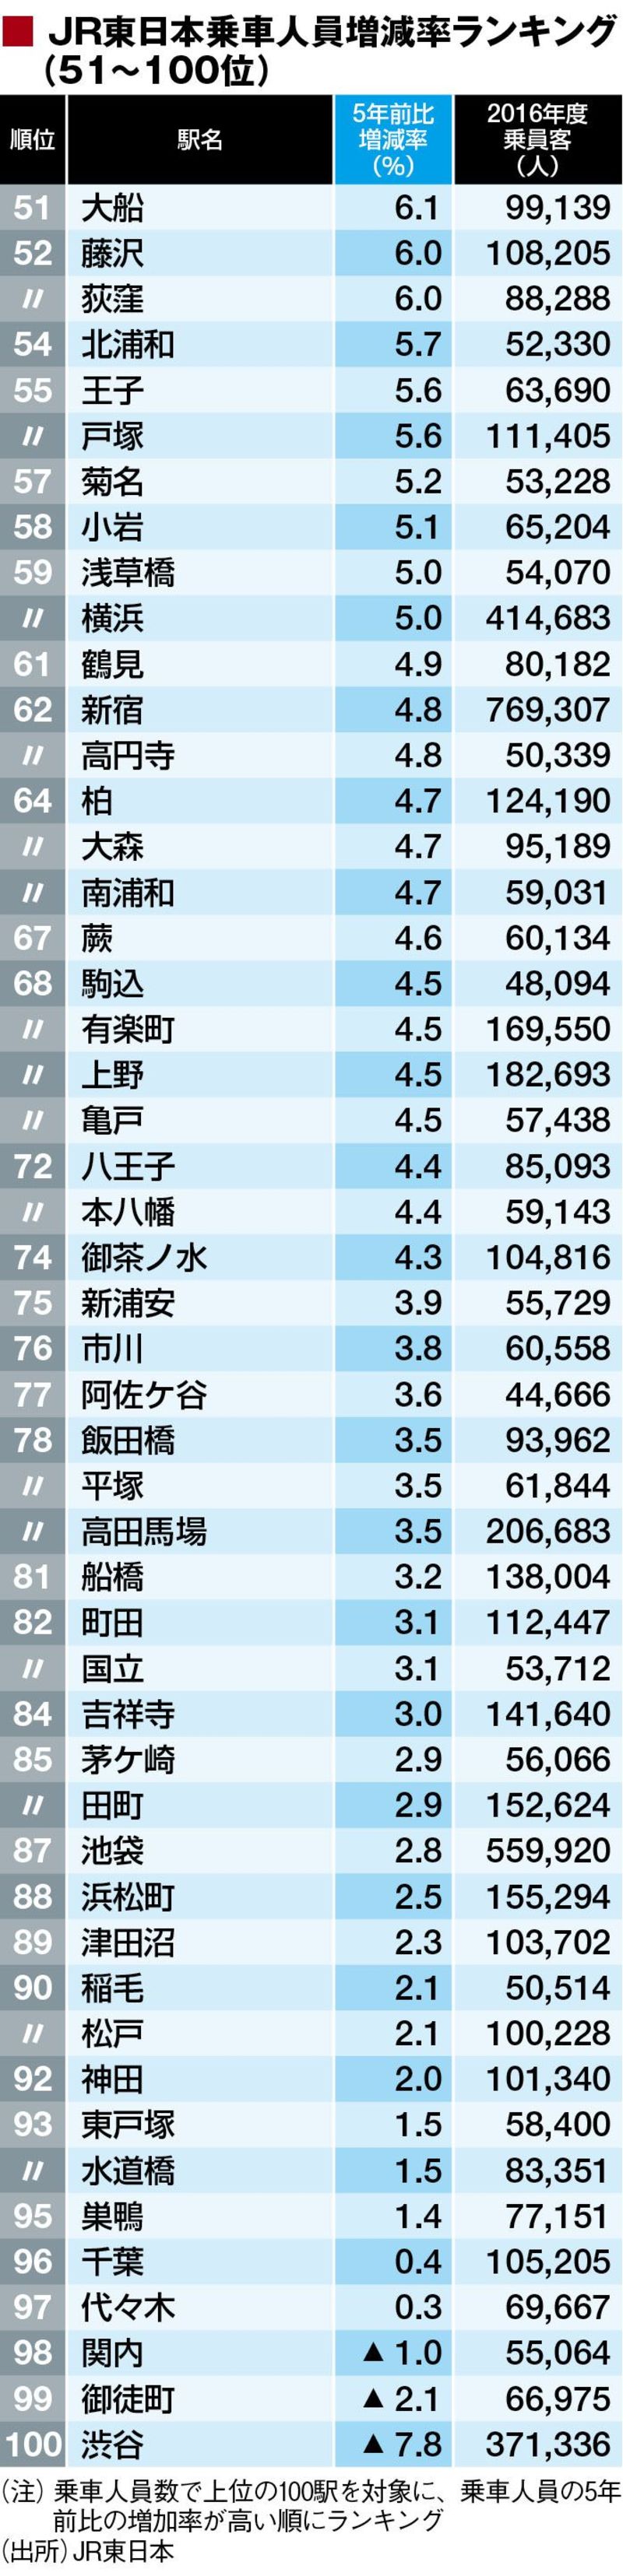 Jr東日本 主要100駅 乗客増減率ランキング 最新の週刊東洋経済 東洋経済オンライン 社会をよくする経済ニュース